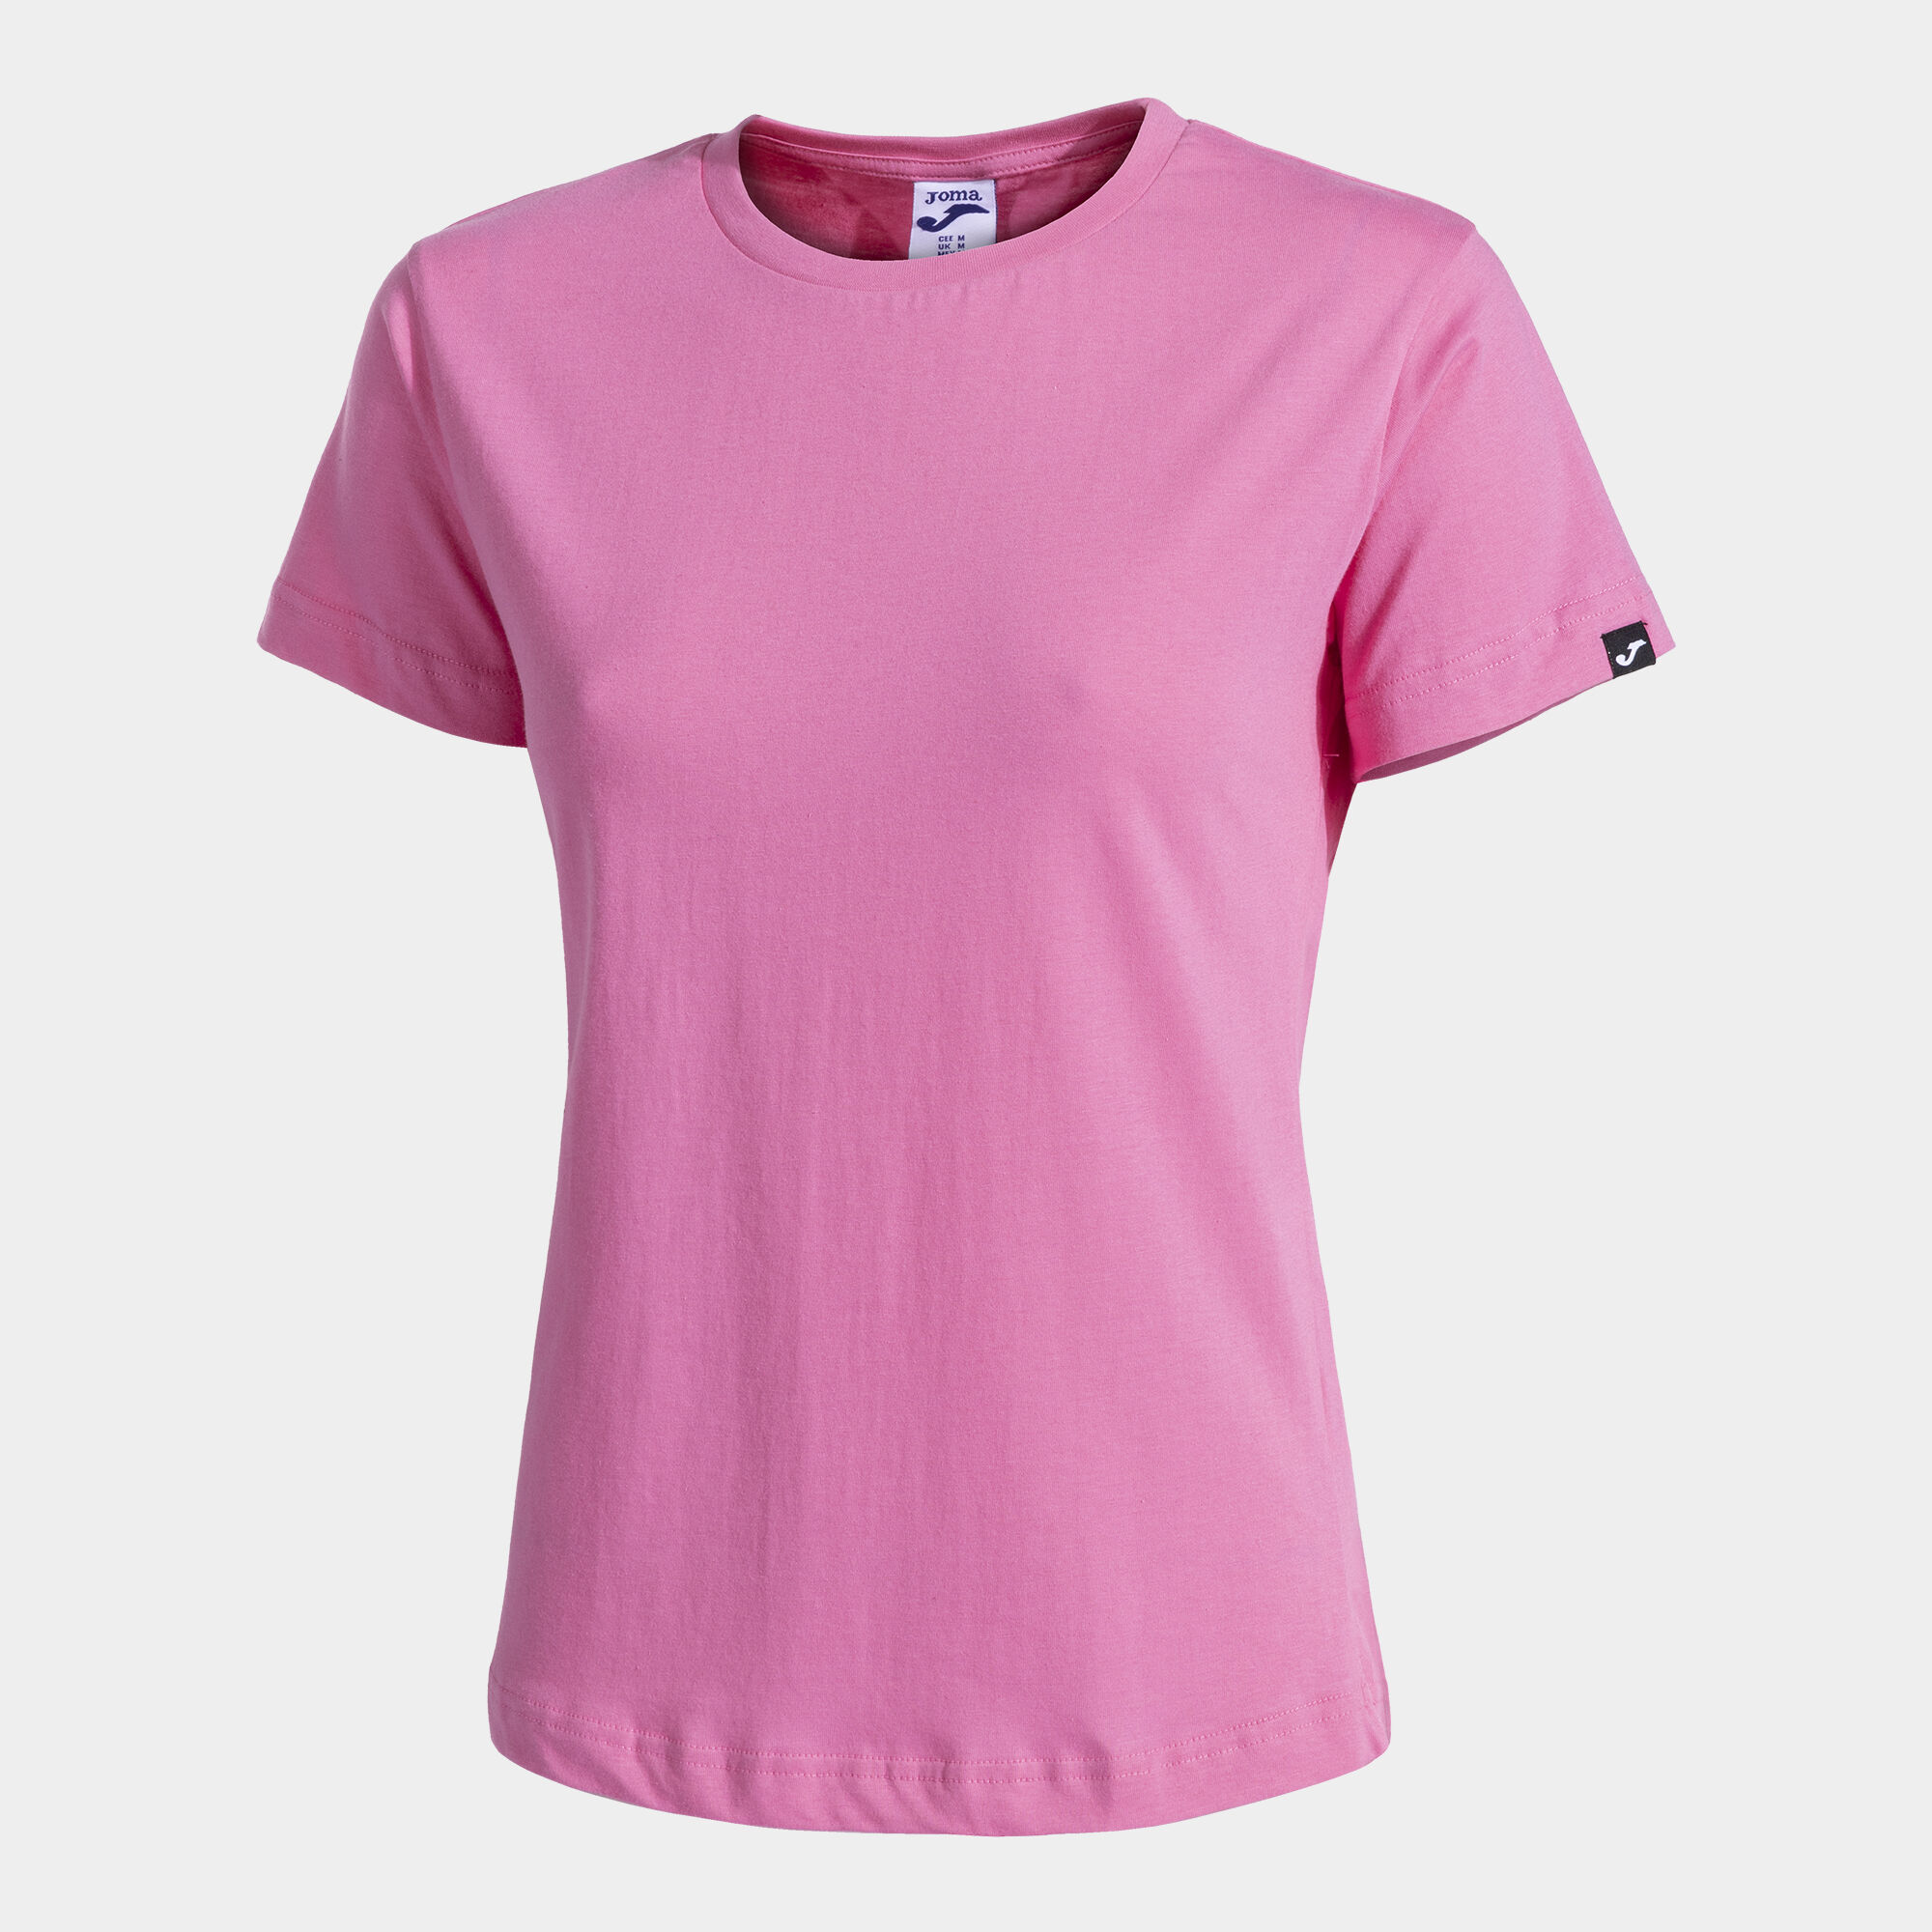 Shirt short sleeve woman Desert pink